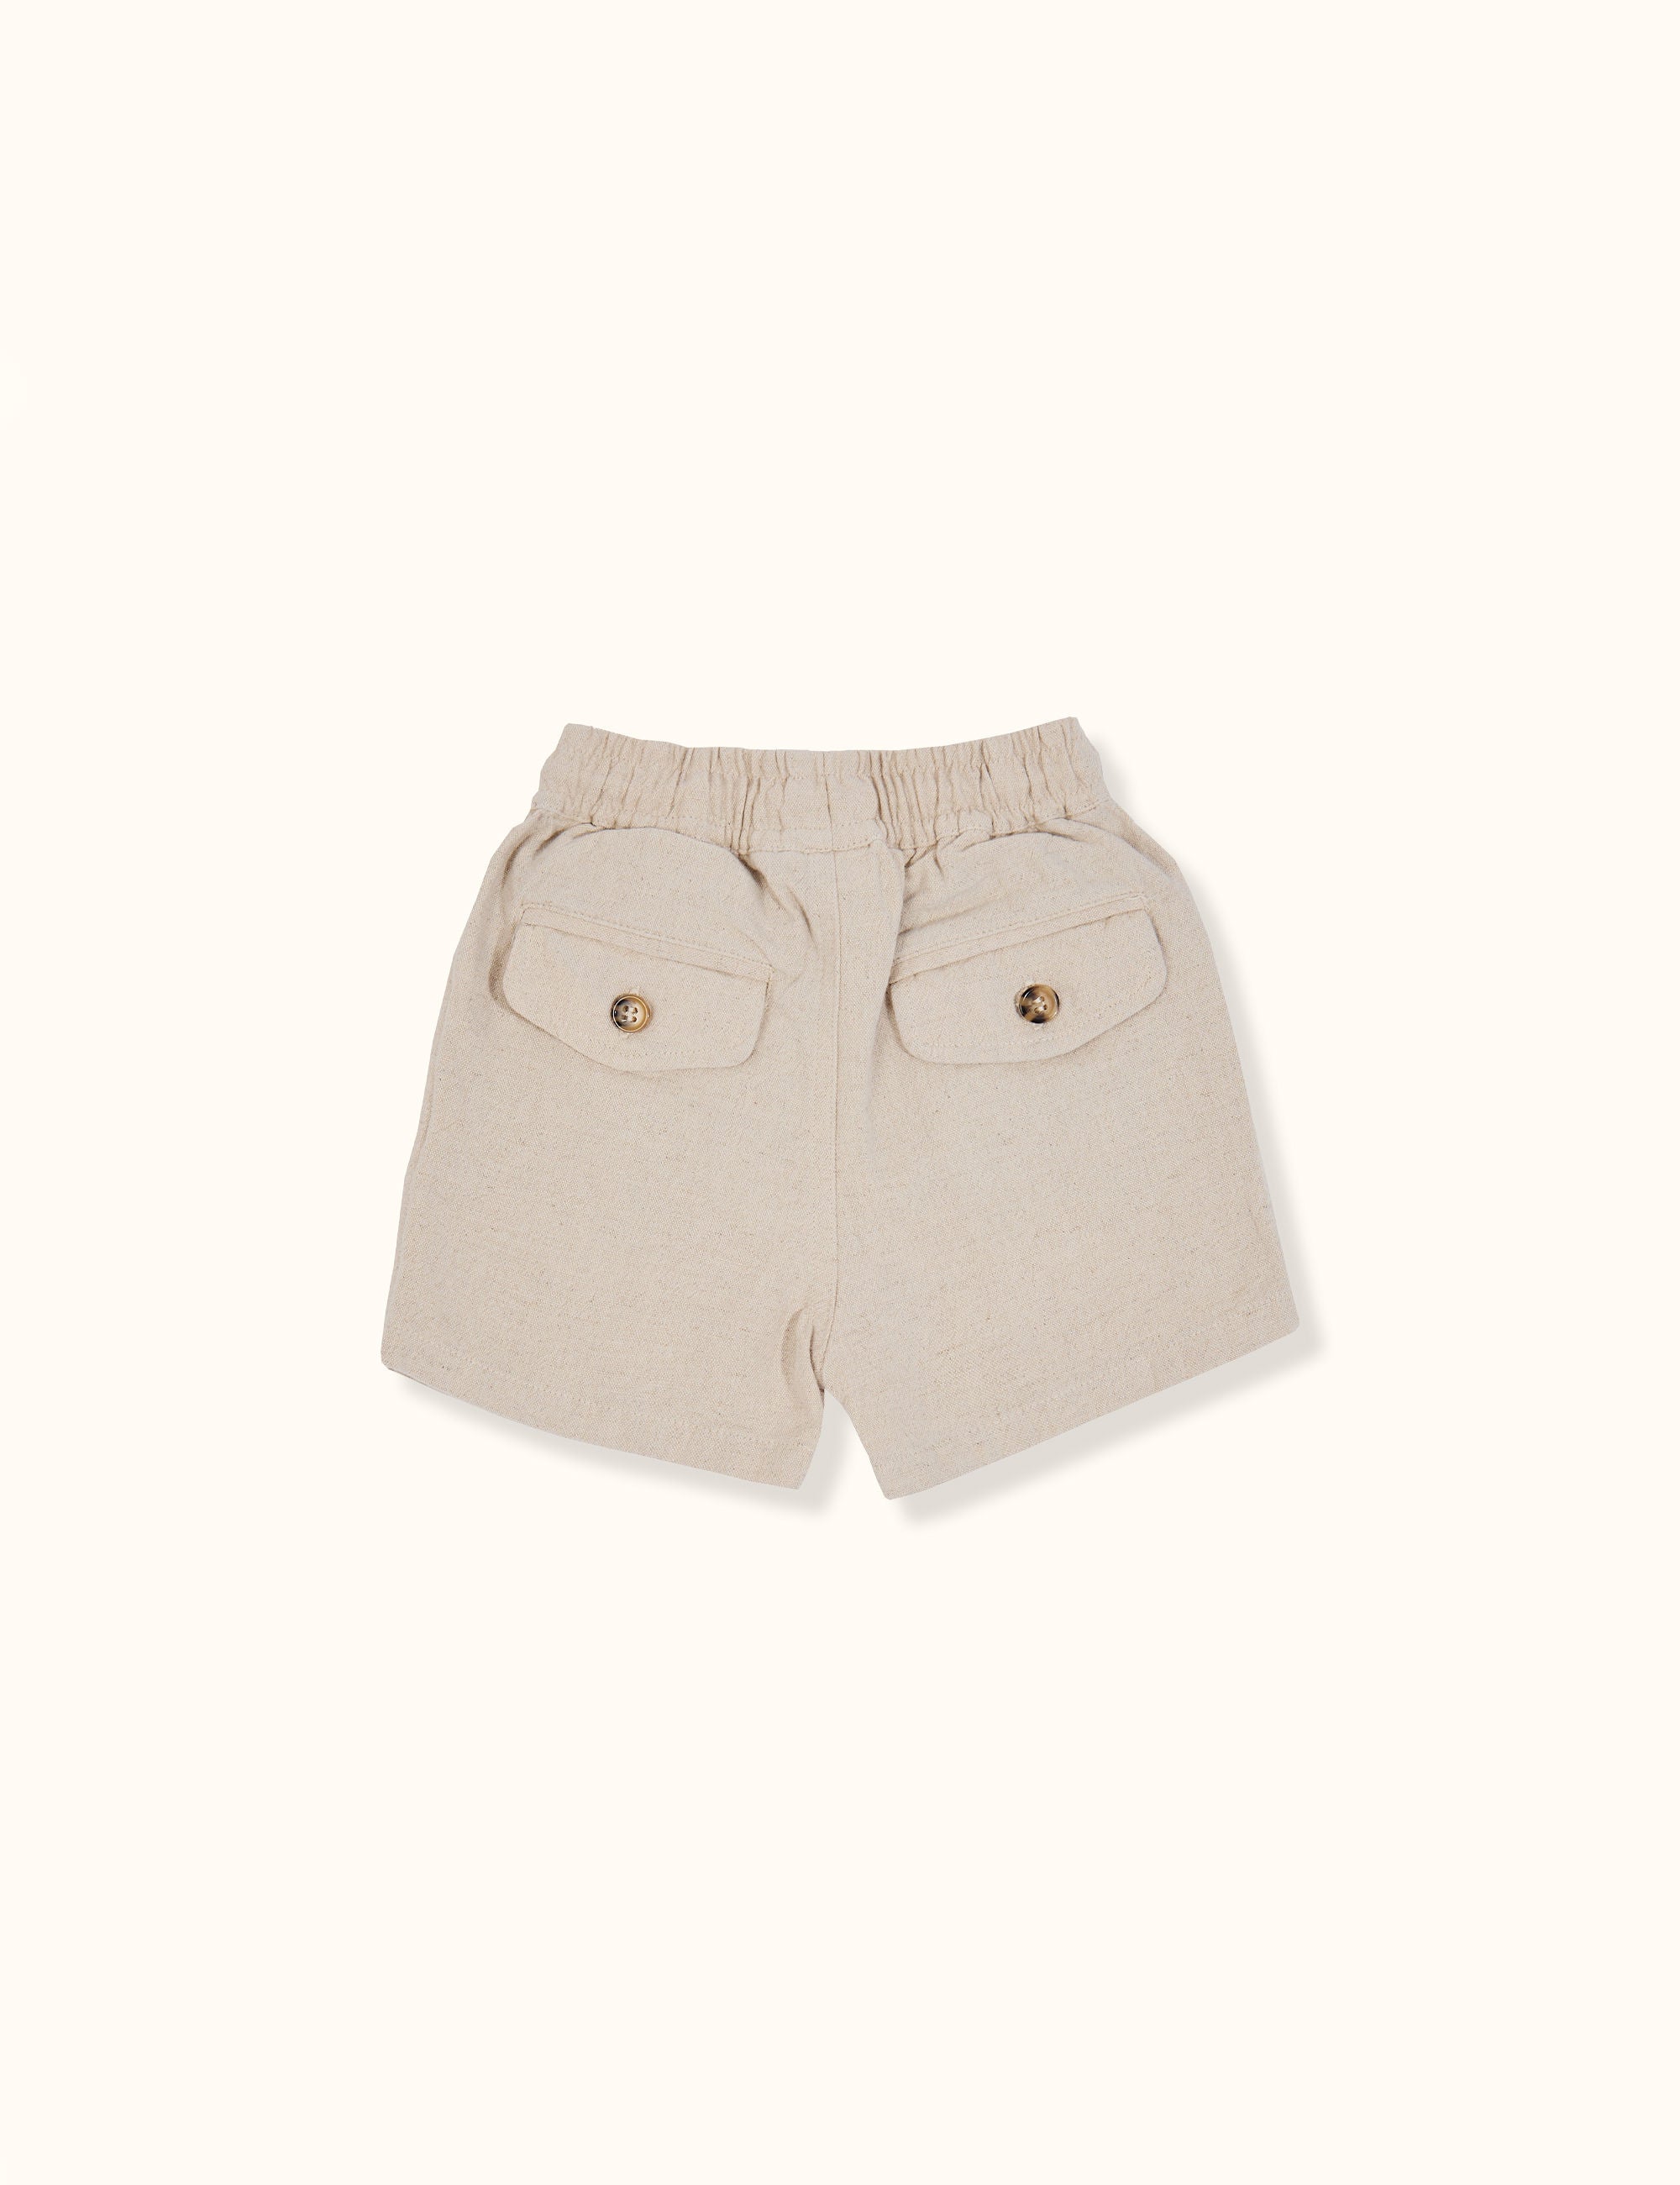 Goldie + Ace - Noah Linen Cotton Shorts (Bone)